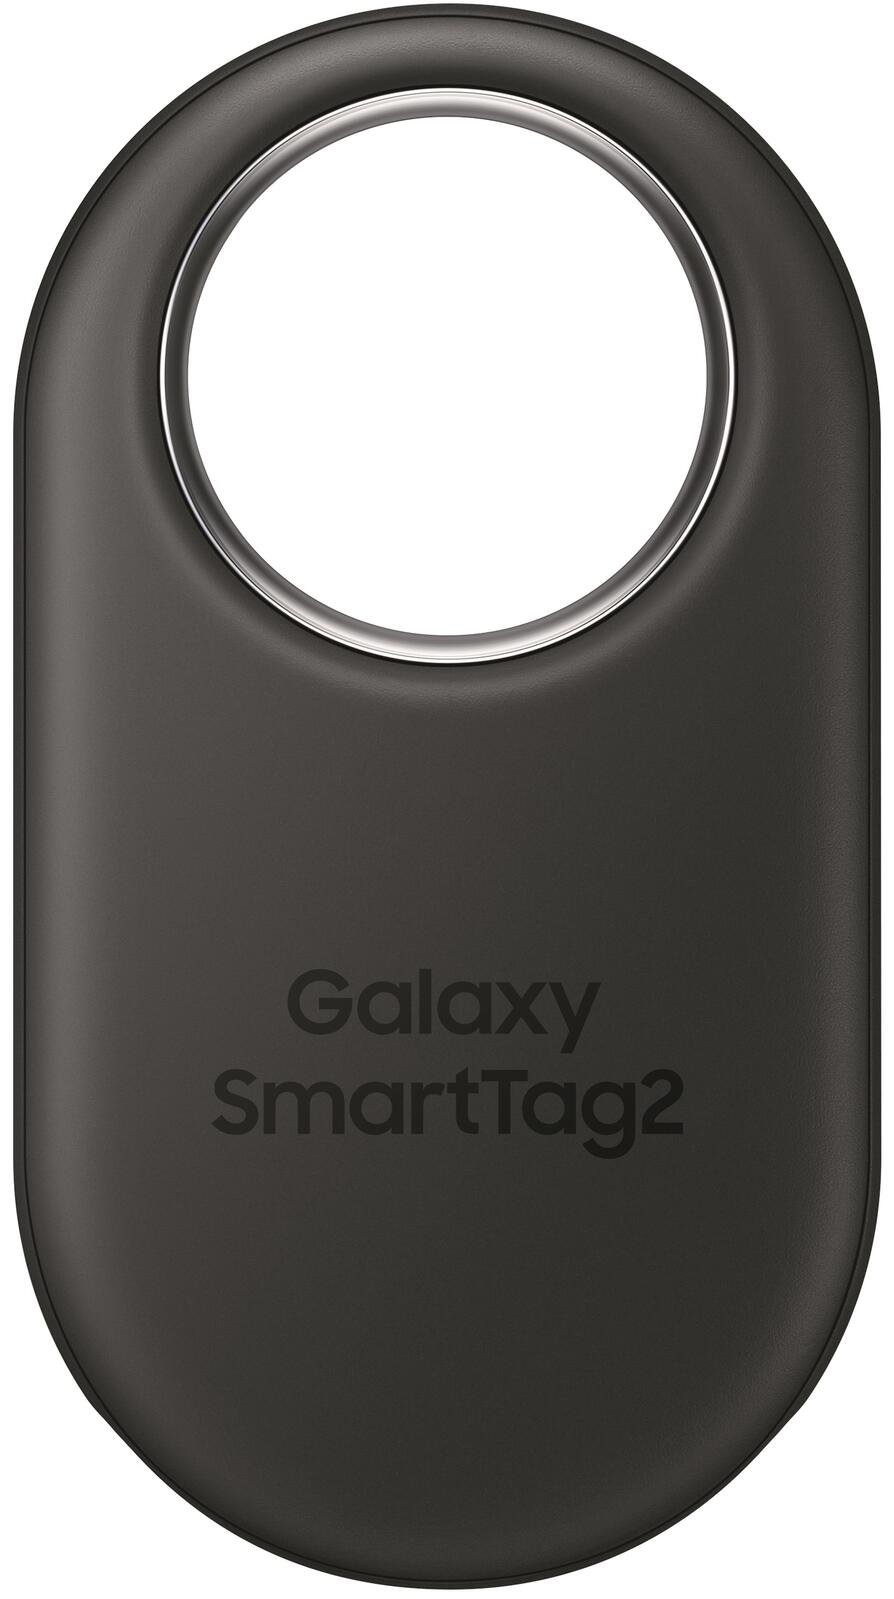 Samsung EI-T5600 SmartTag 2 Item Finder